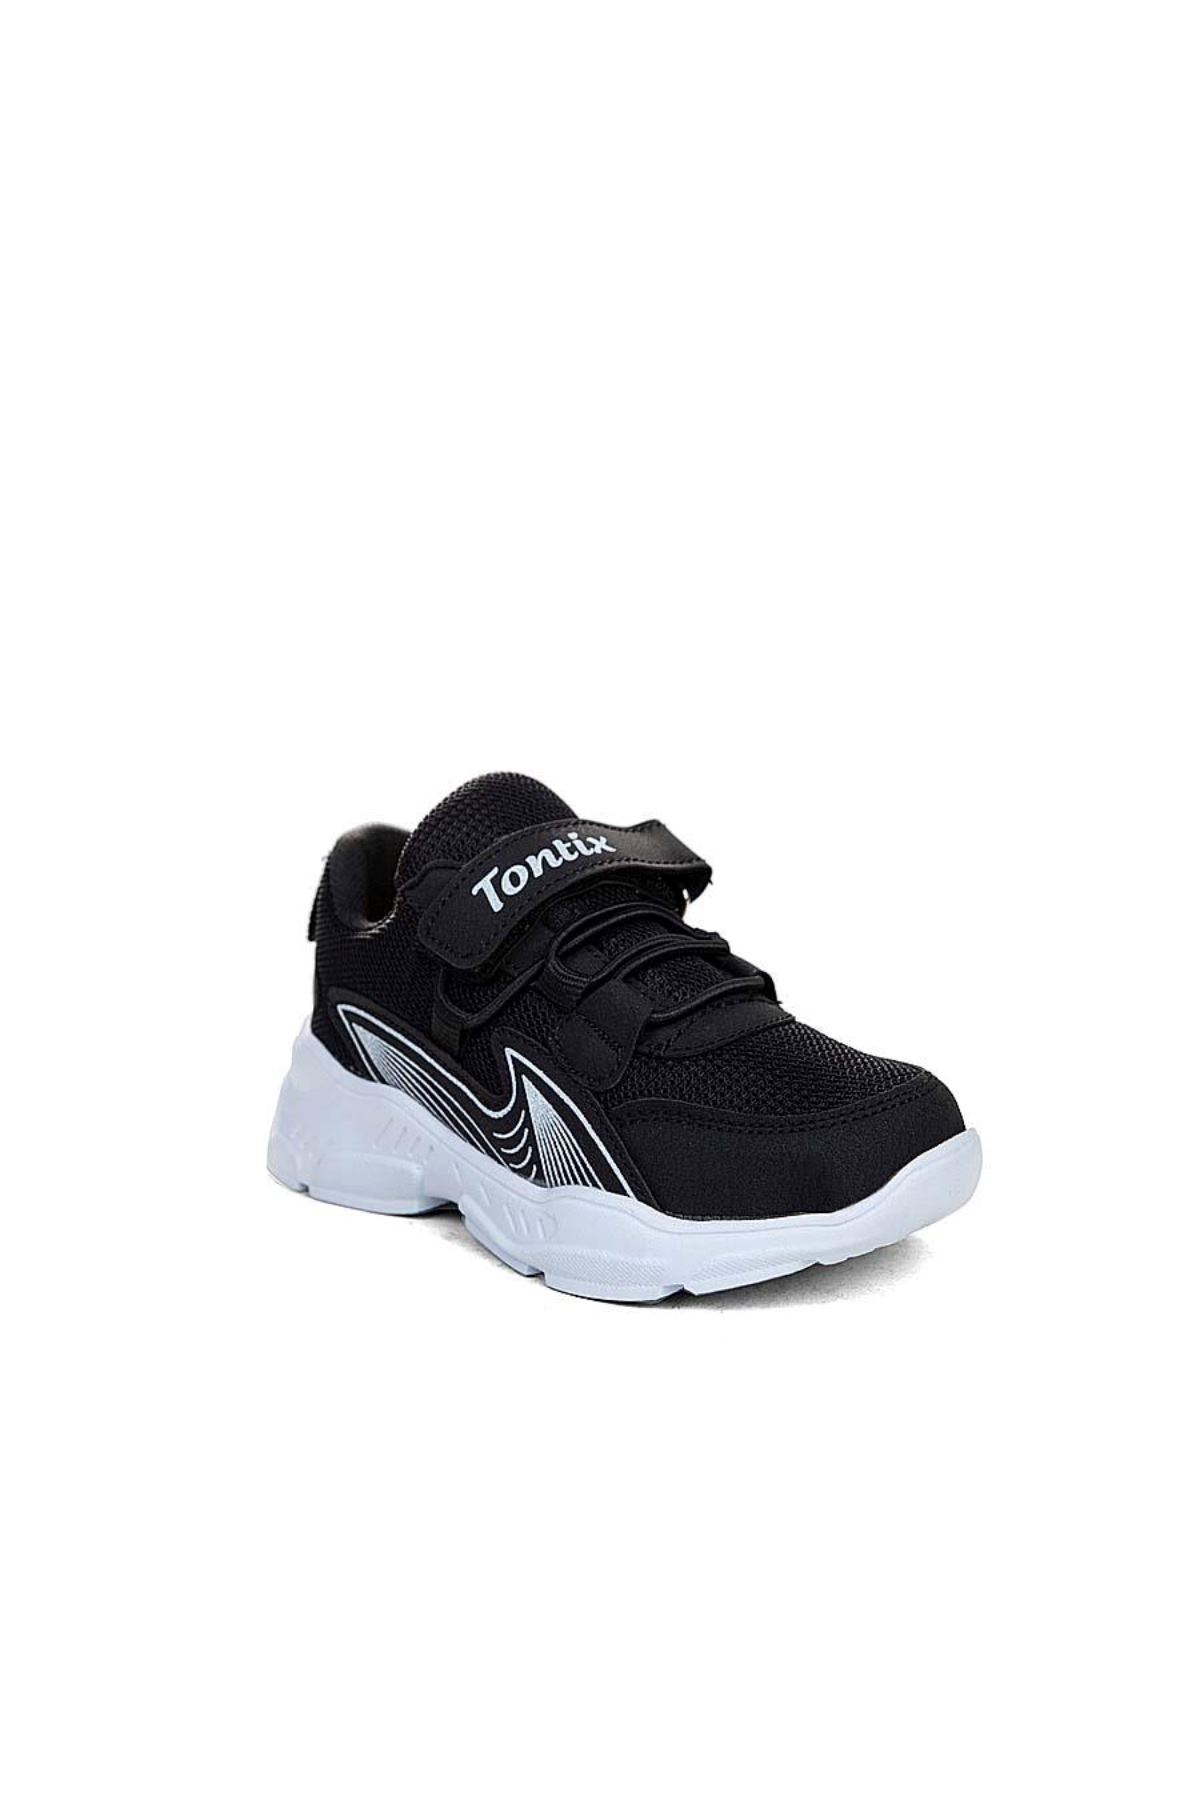 Tontix Filet 4001 Erkek Çocuk Siyah Günlük Ayakkabı - DR04A4001.02